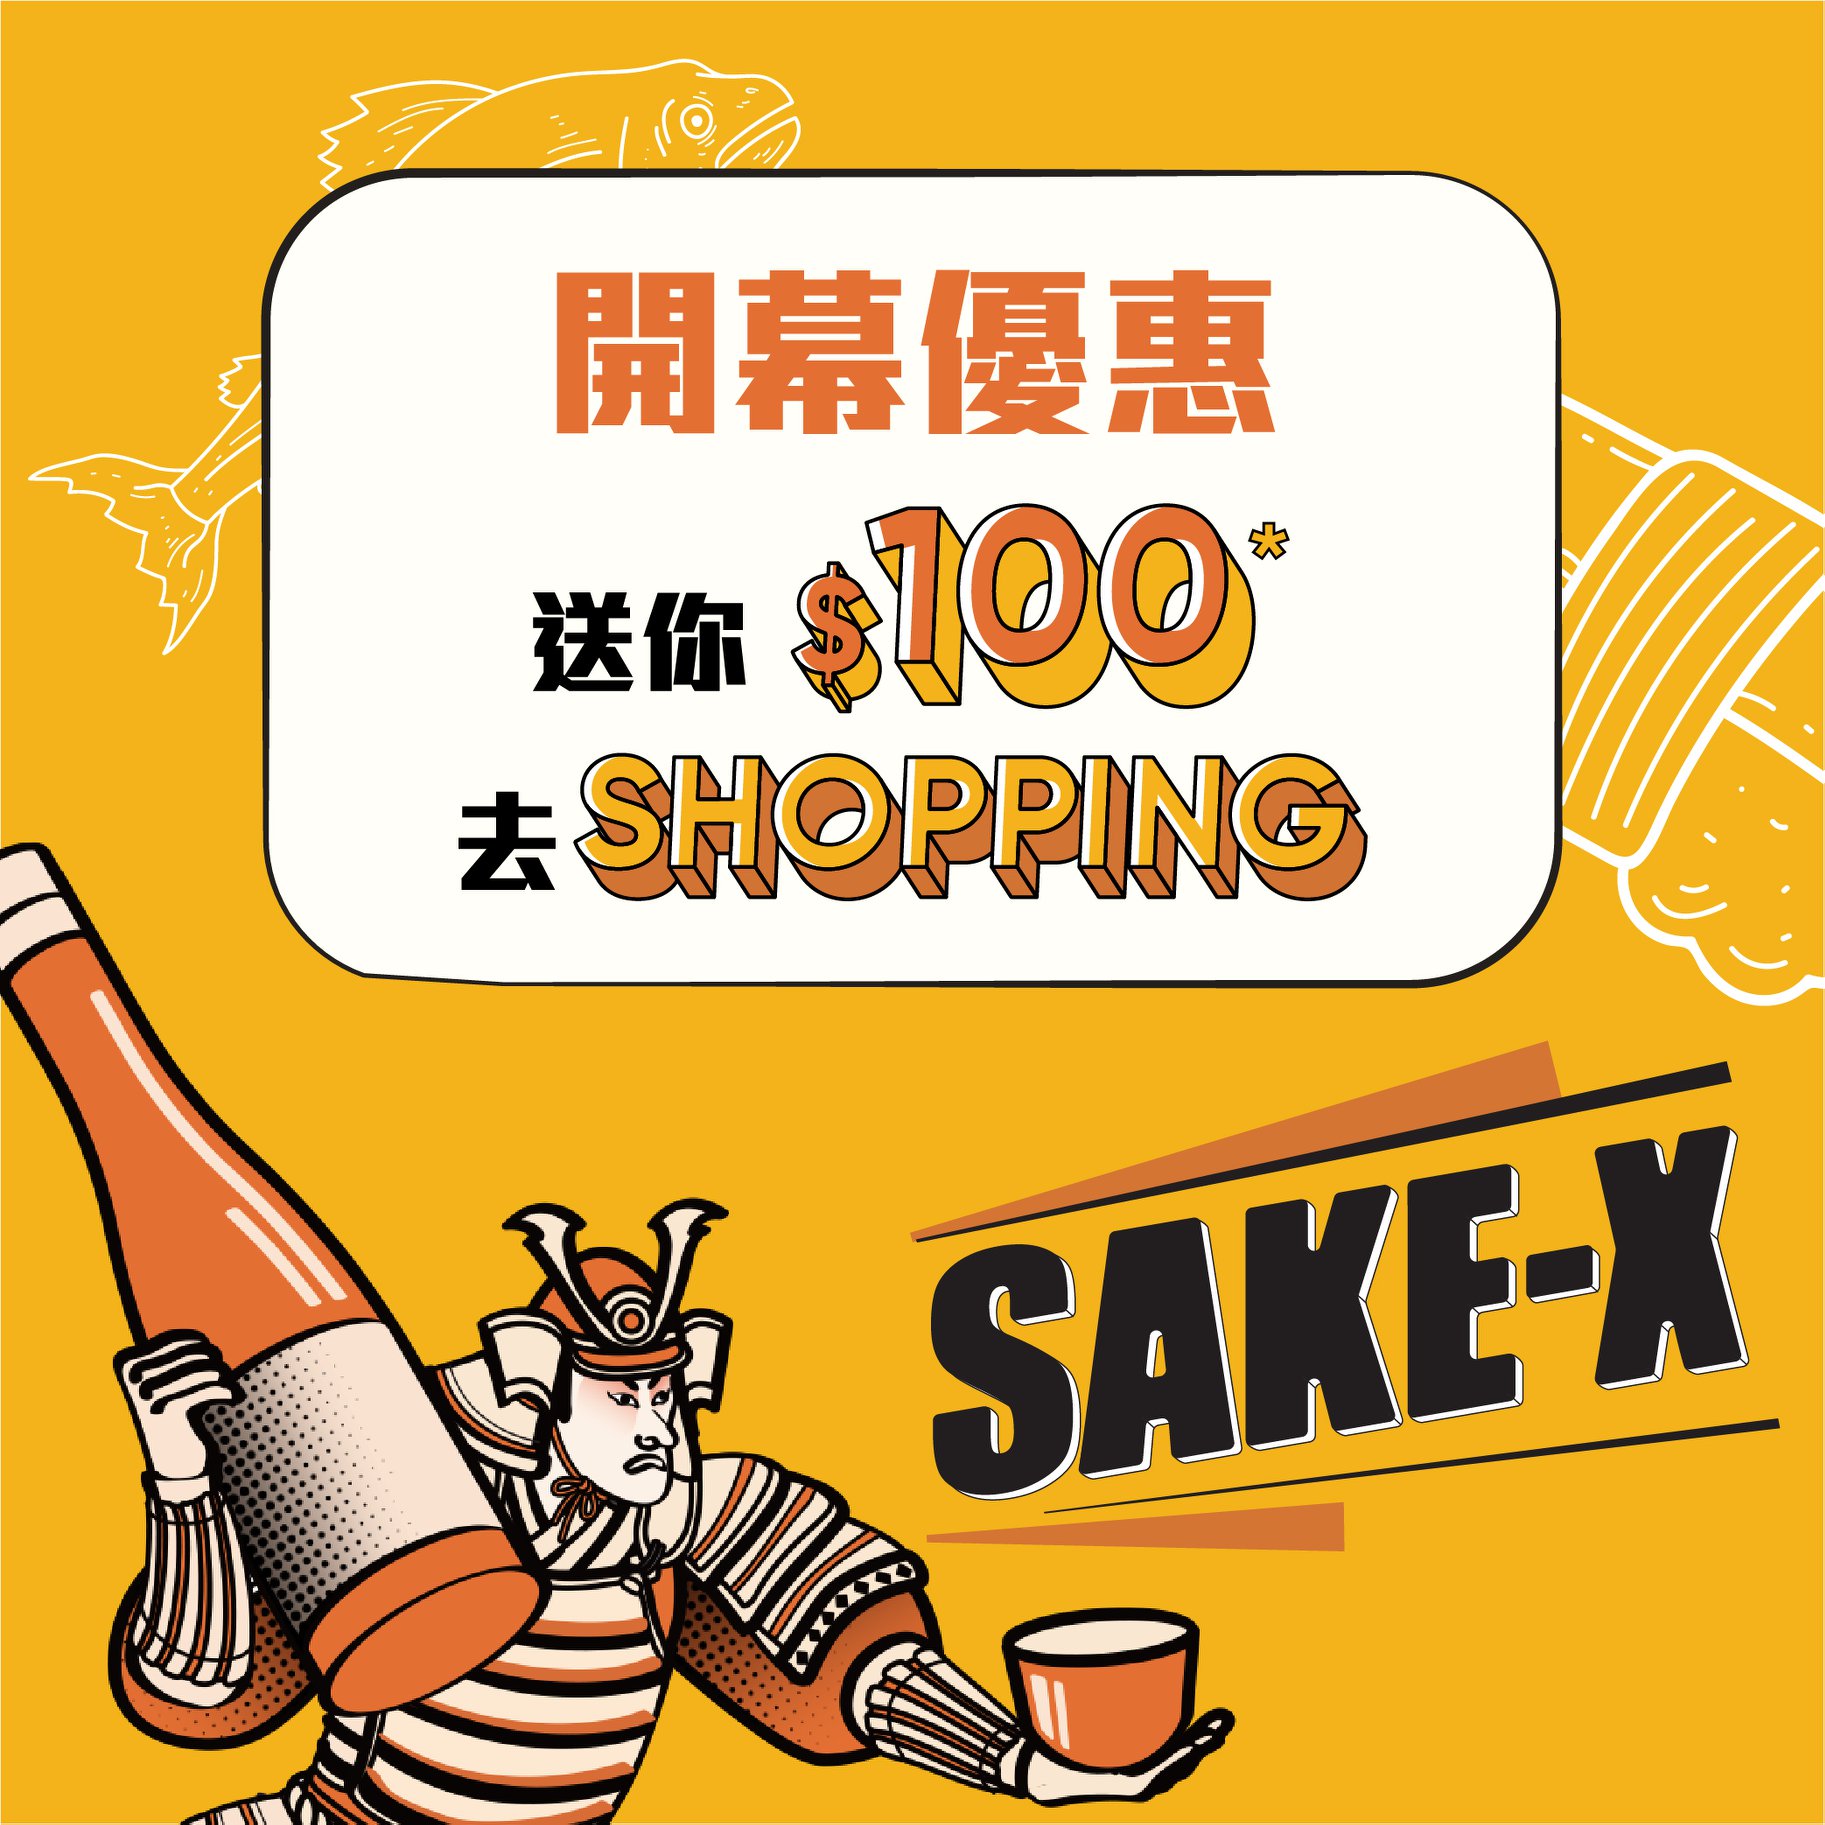 SAKE-X 開幕優惠 🎉 為左賀一賀新店開張